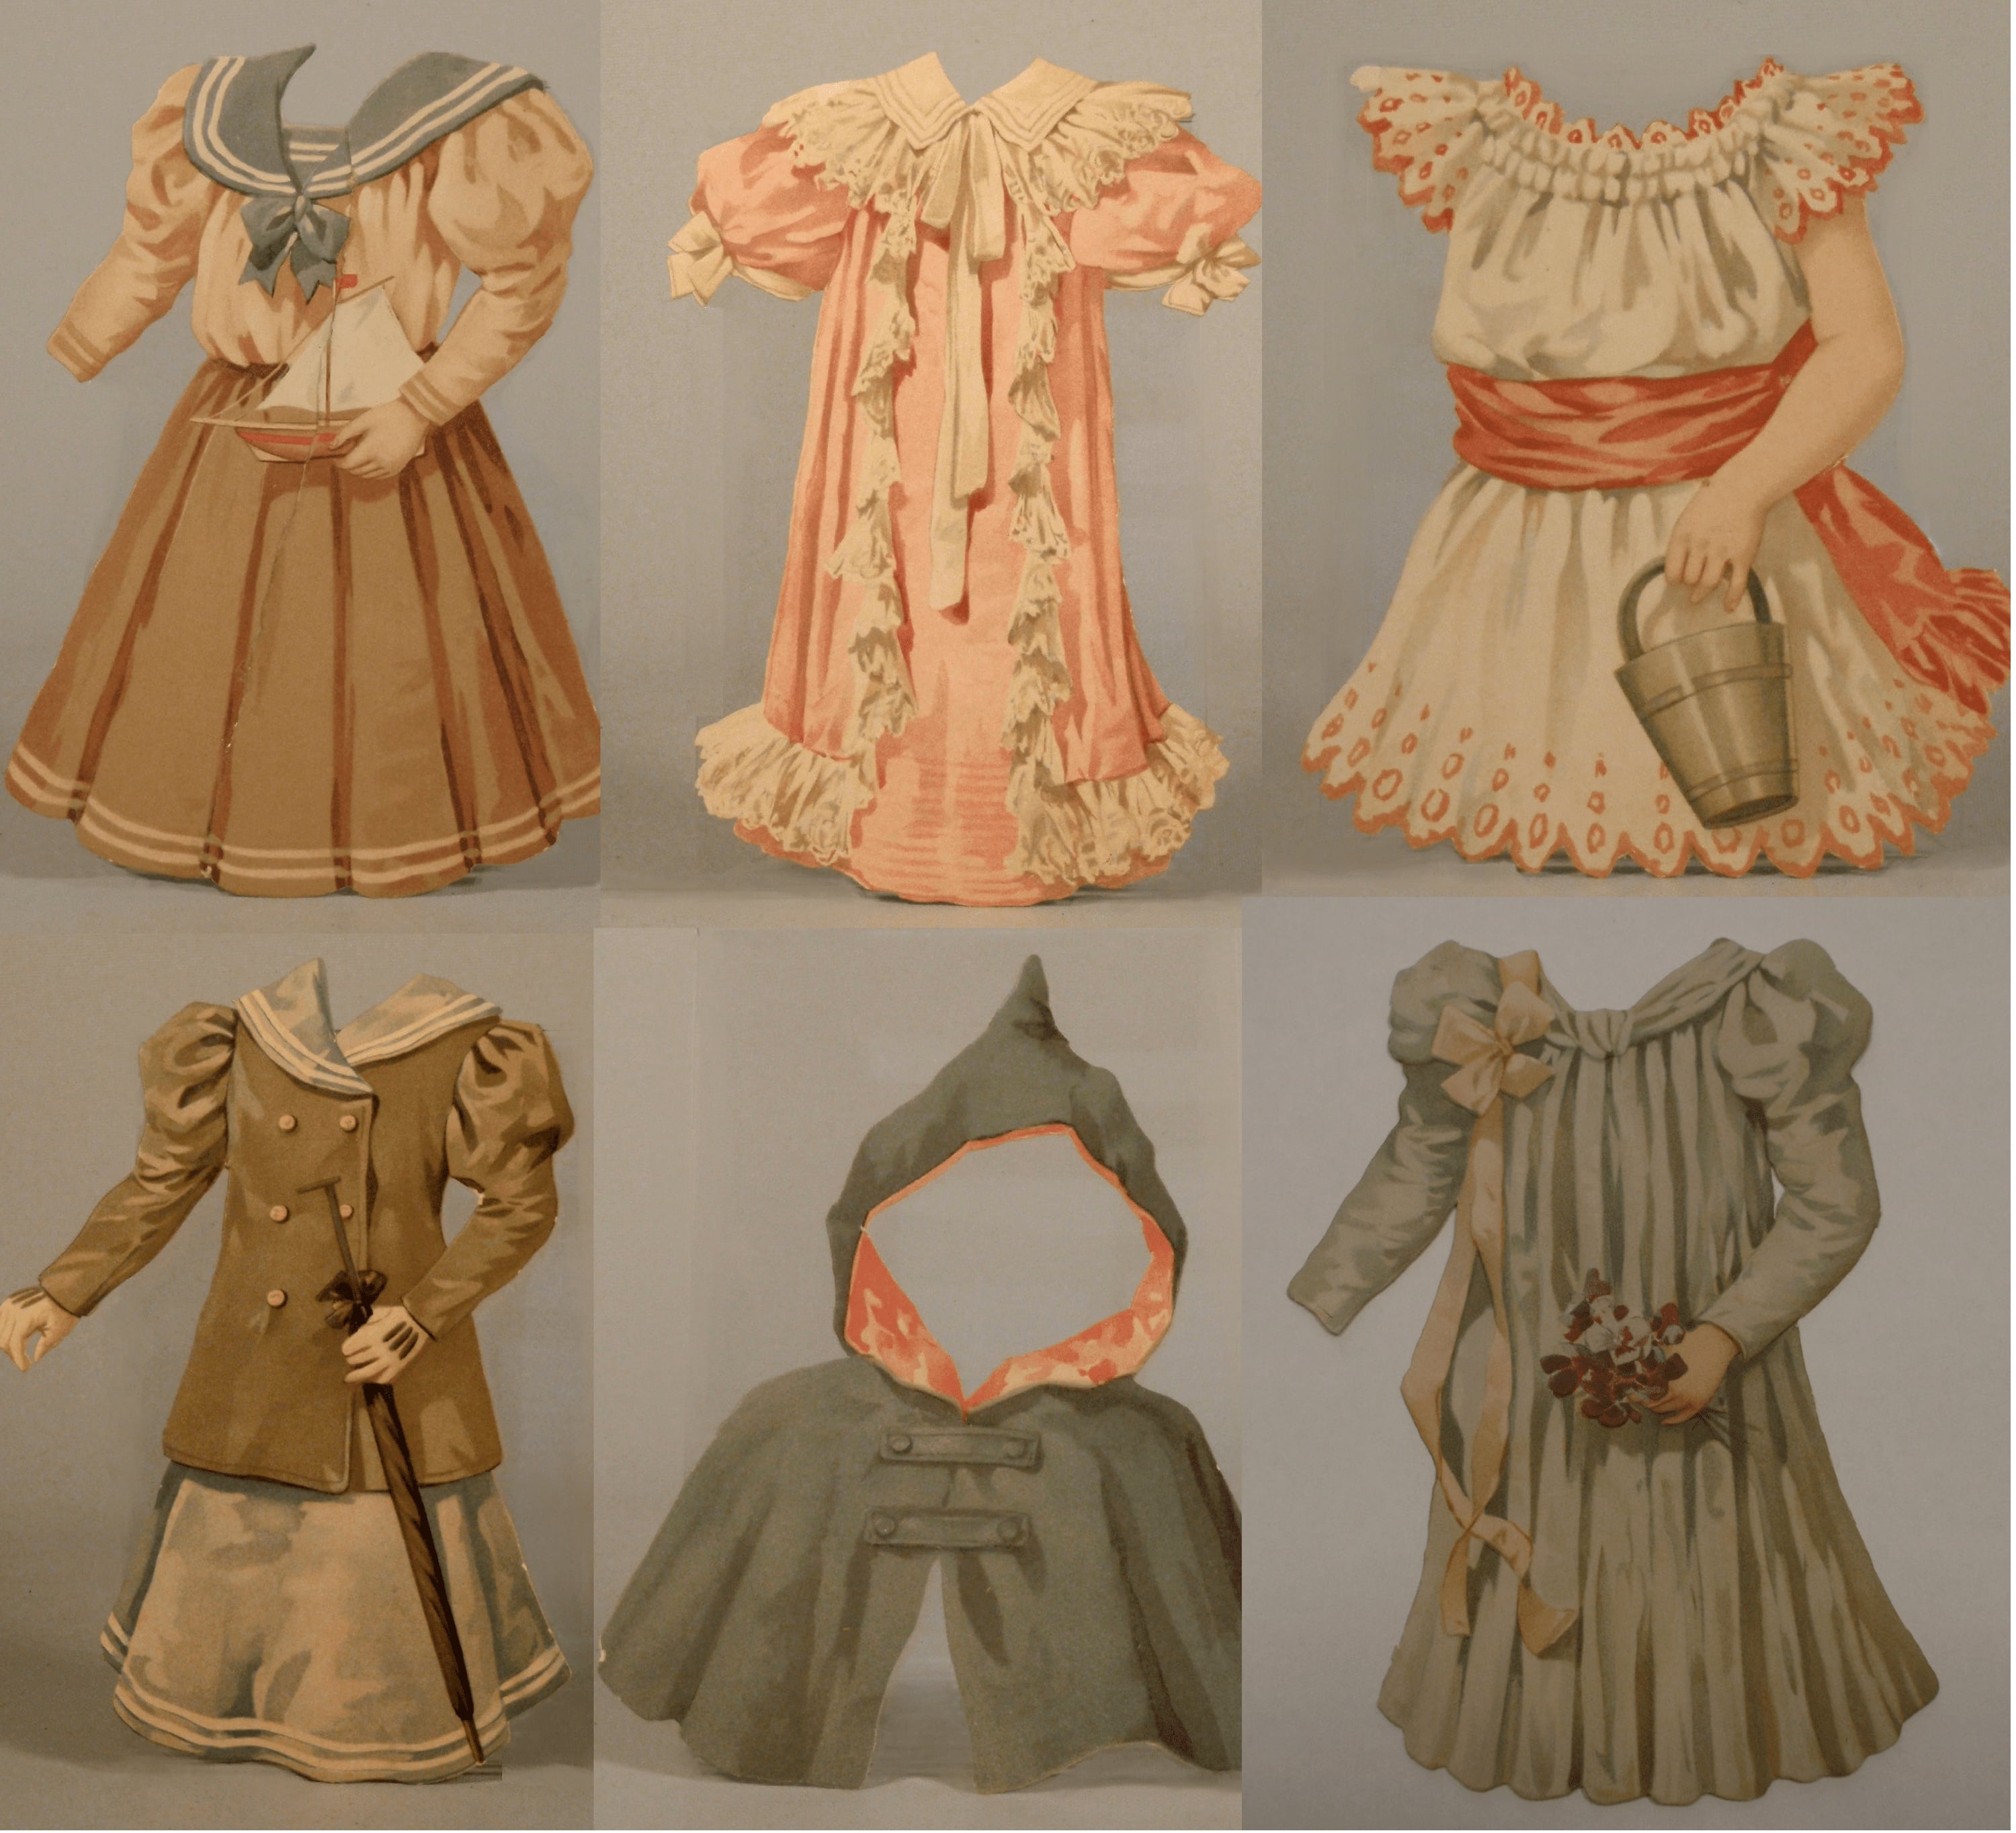 vestitini per bambola, in cartoncino, accessori ludici - area inglese (inizio XX secolo)